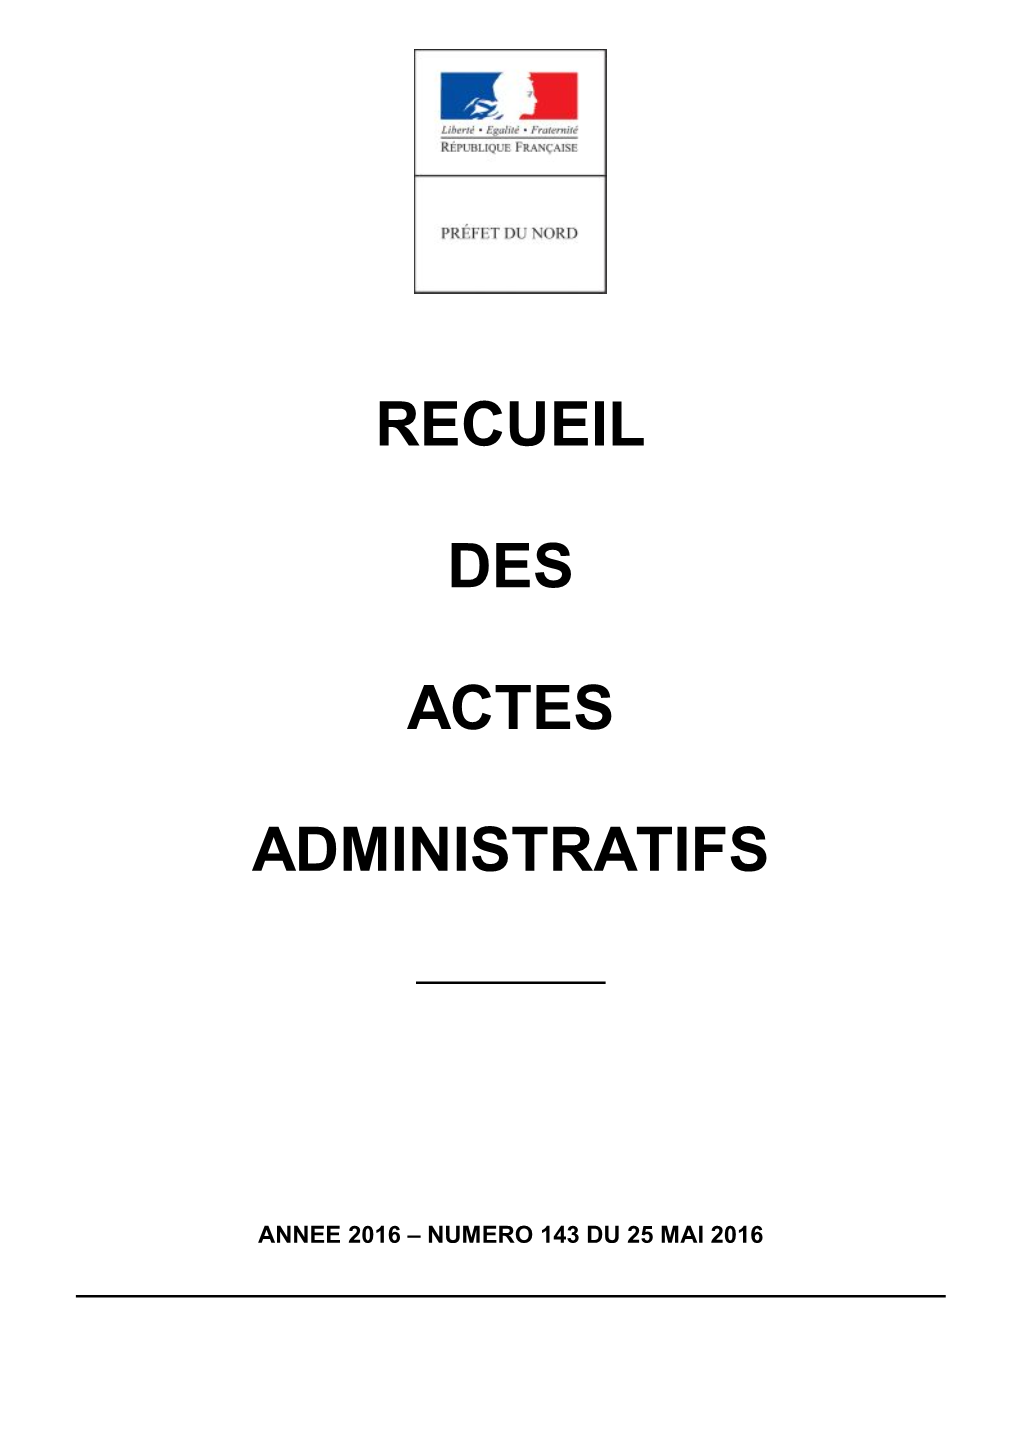 Recueil Des Actes Administratifs De La Préfecture Du Nord Année 2016 - N° 143 Du 25 Mai 2016